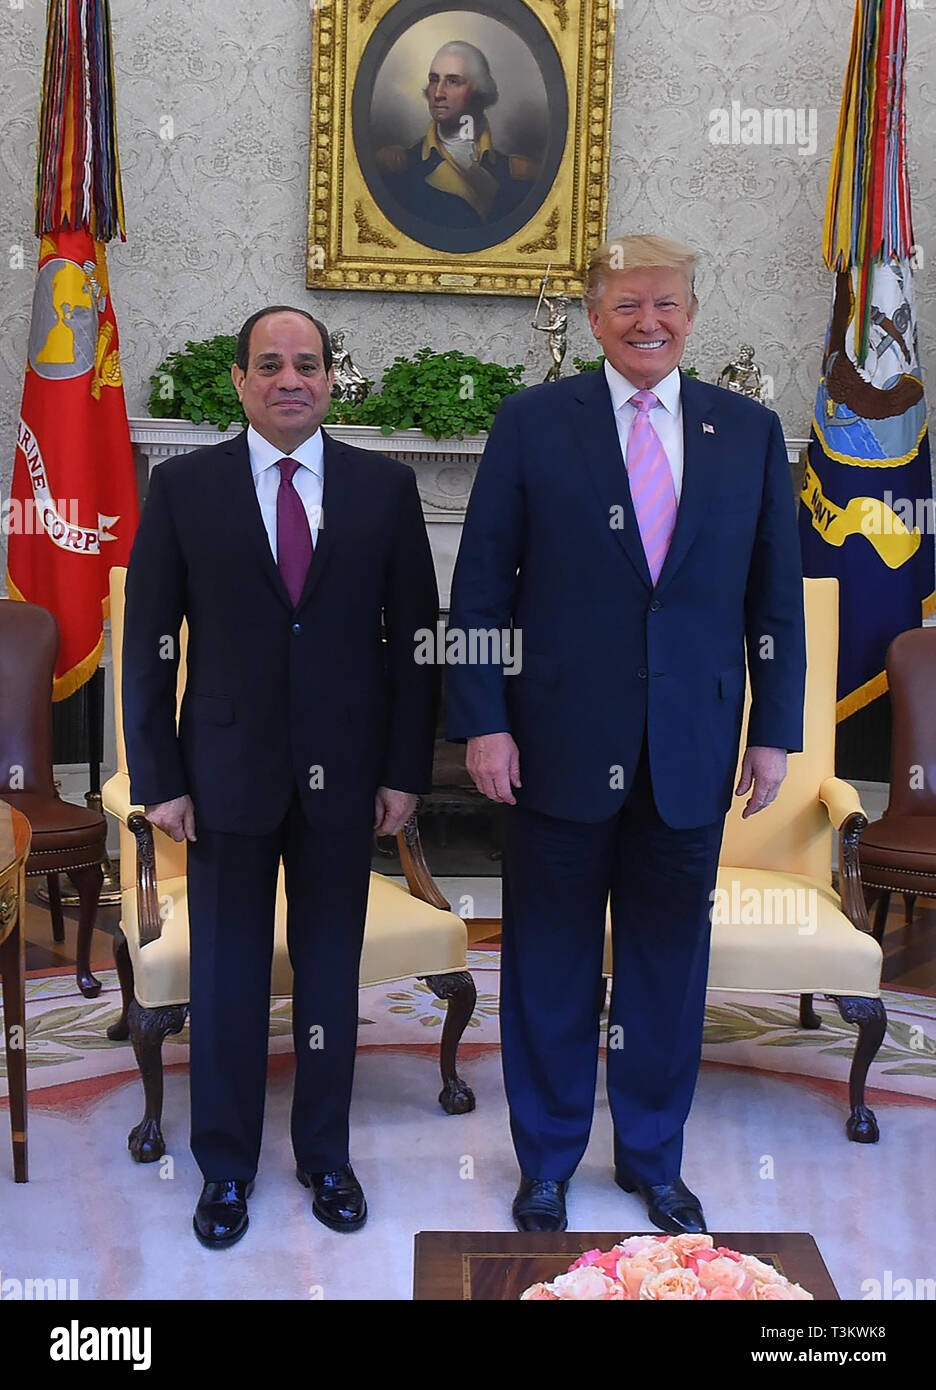 Washington, DC - 9 avril 2019 - Le président américain, Donald Trump se réunit avec le président égyptien Abdel Fattah El Sisi à la Maison Blanche pour discuter des relations bilatérales au cours de sa visite d'État des États-Unis. (Photo) de la présidence égyptienne Banque D'Images